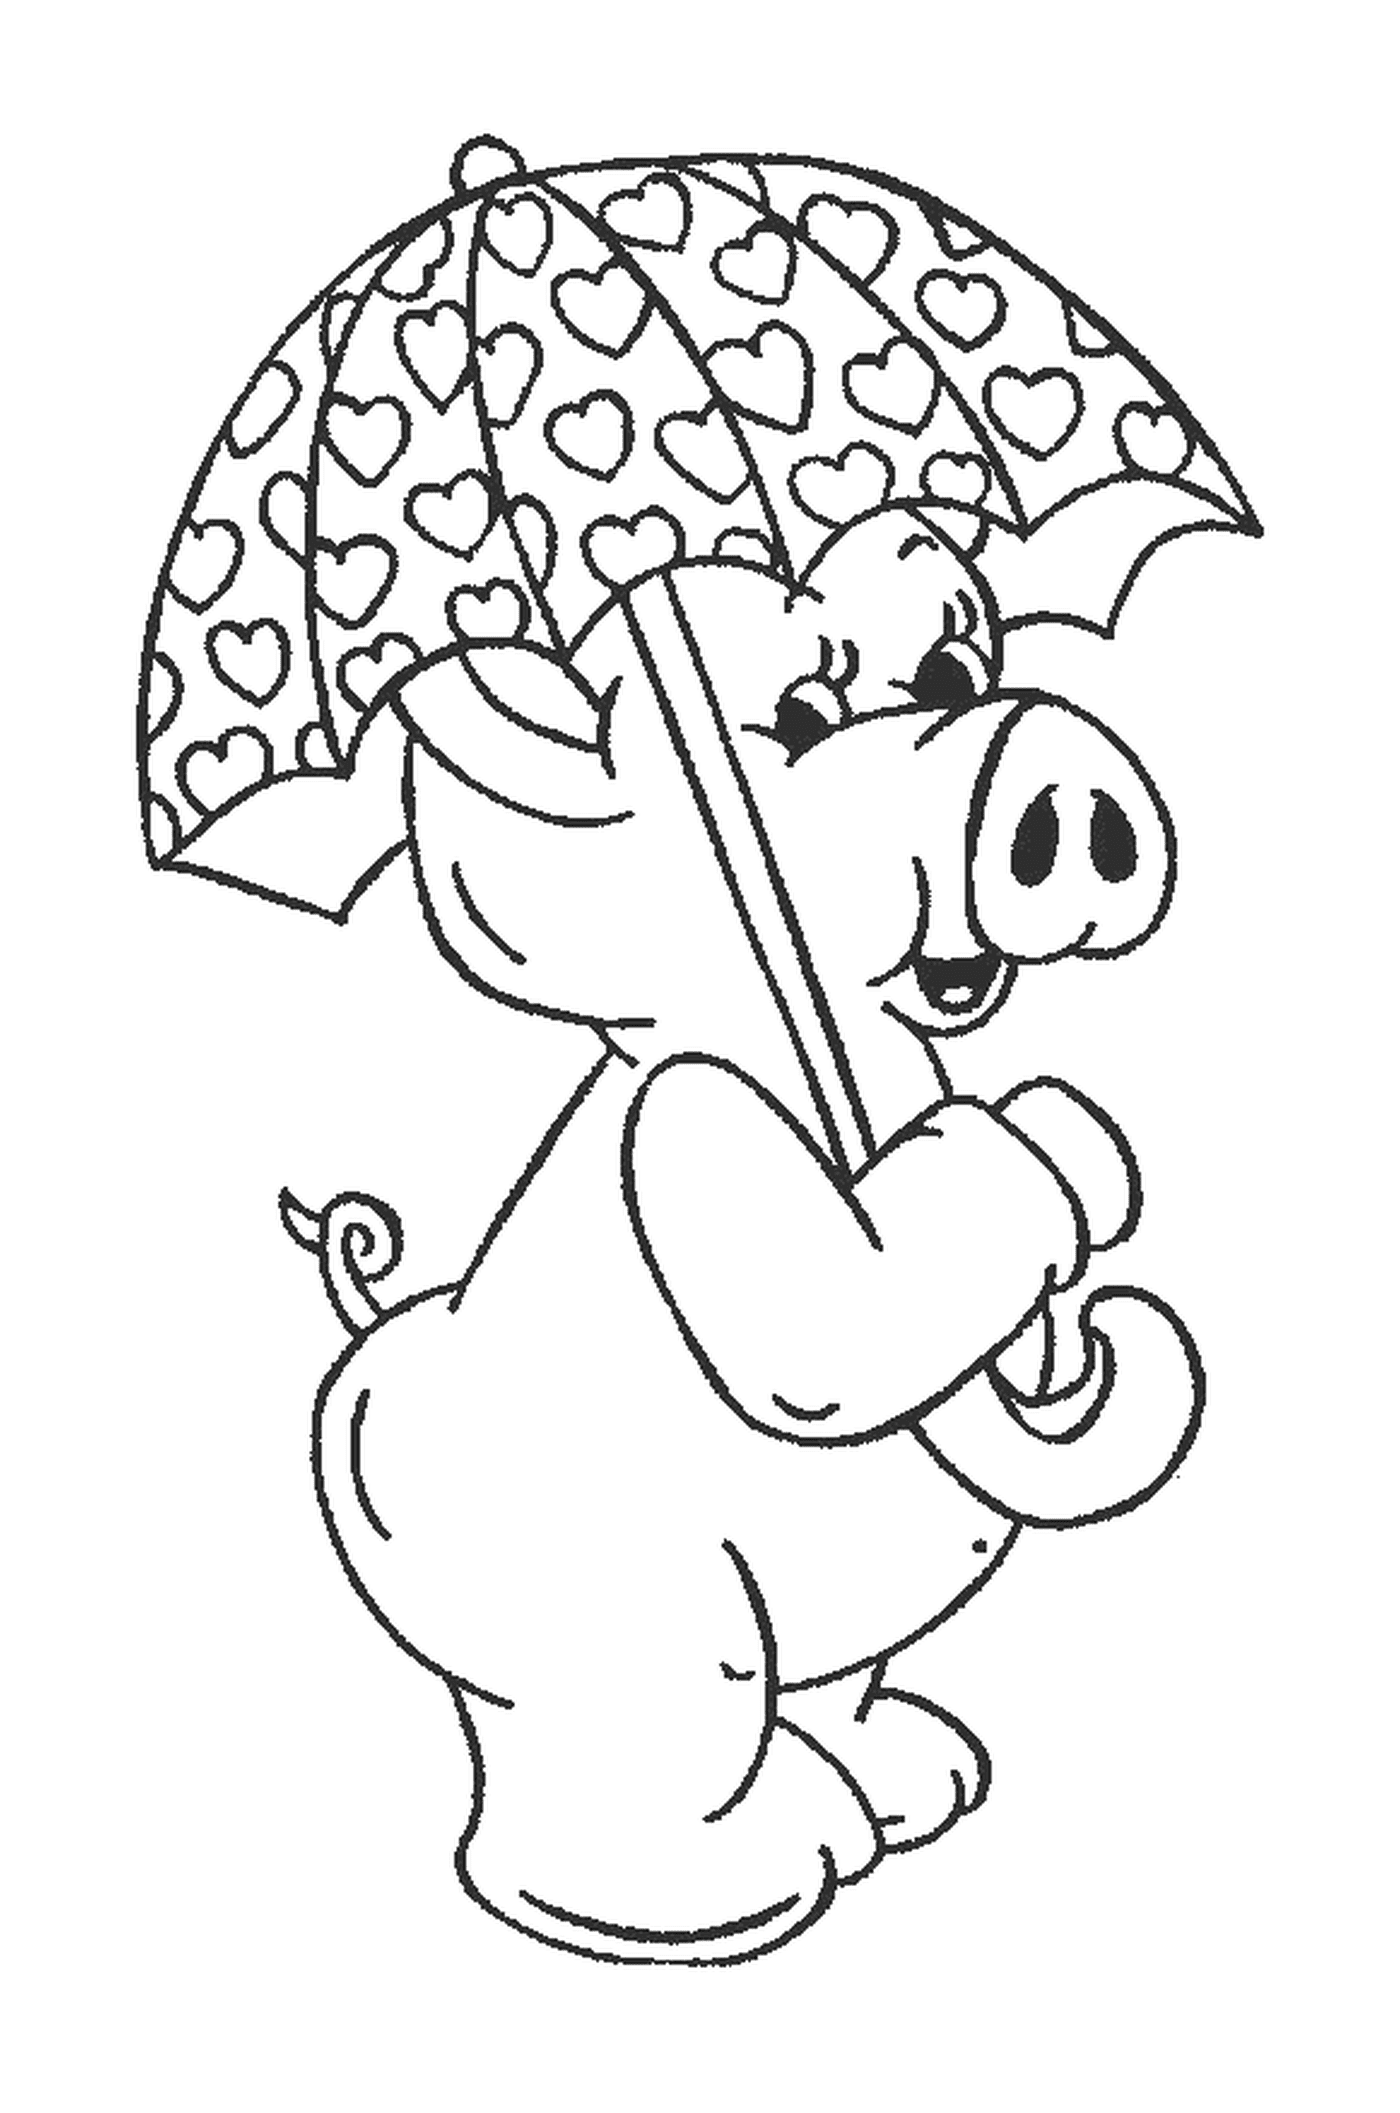  Свинья, держащая зонтик во рту 